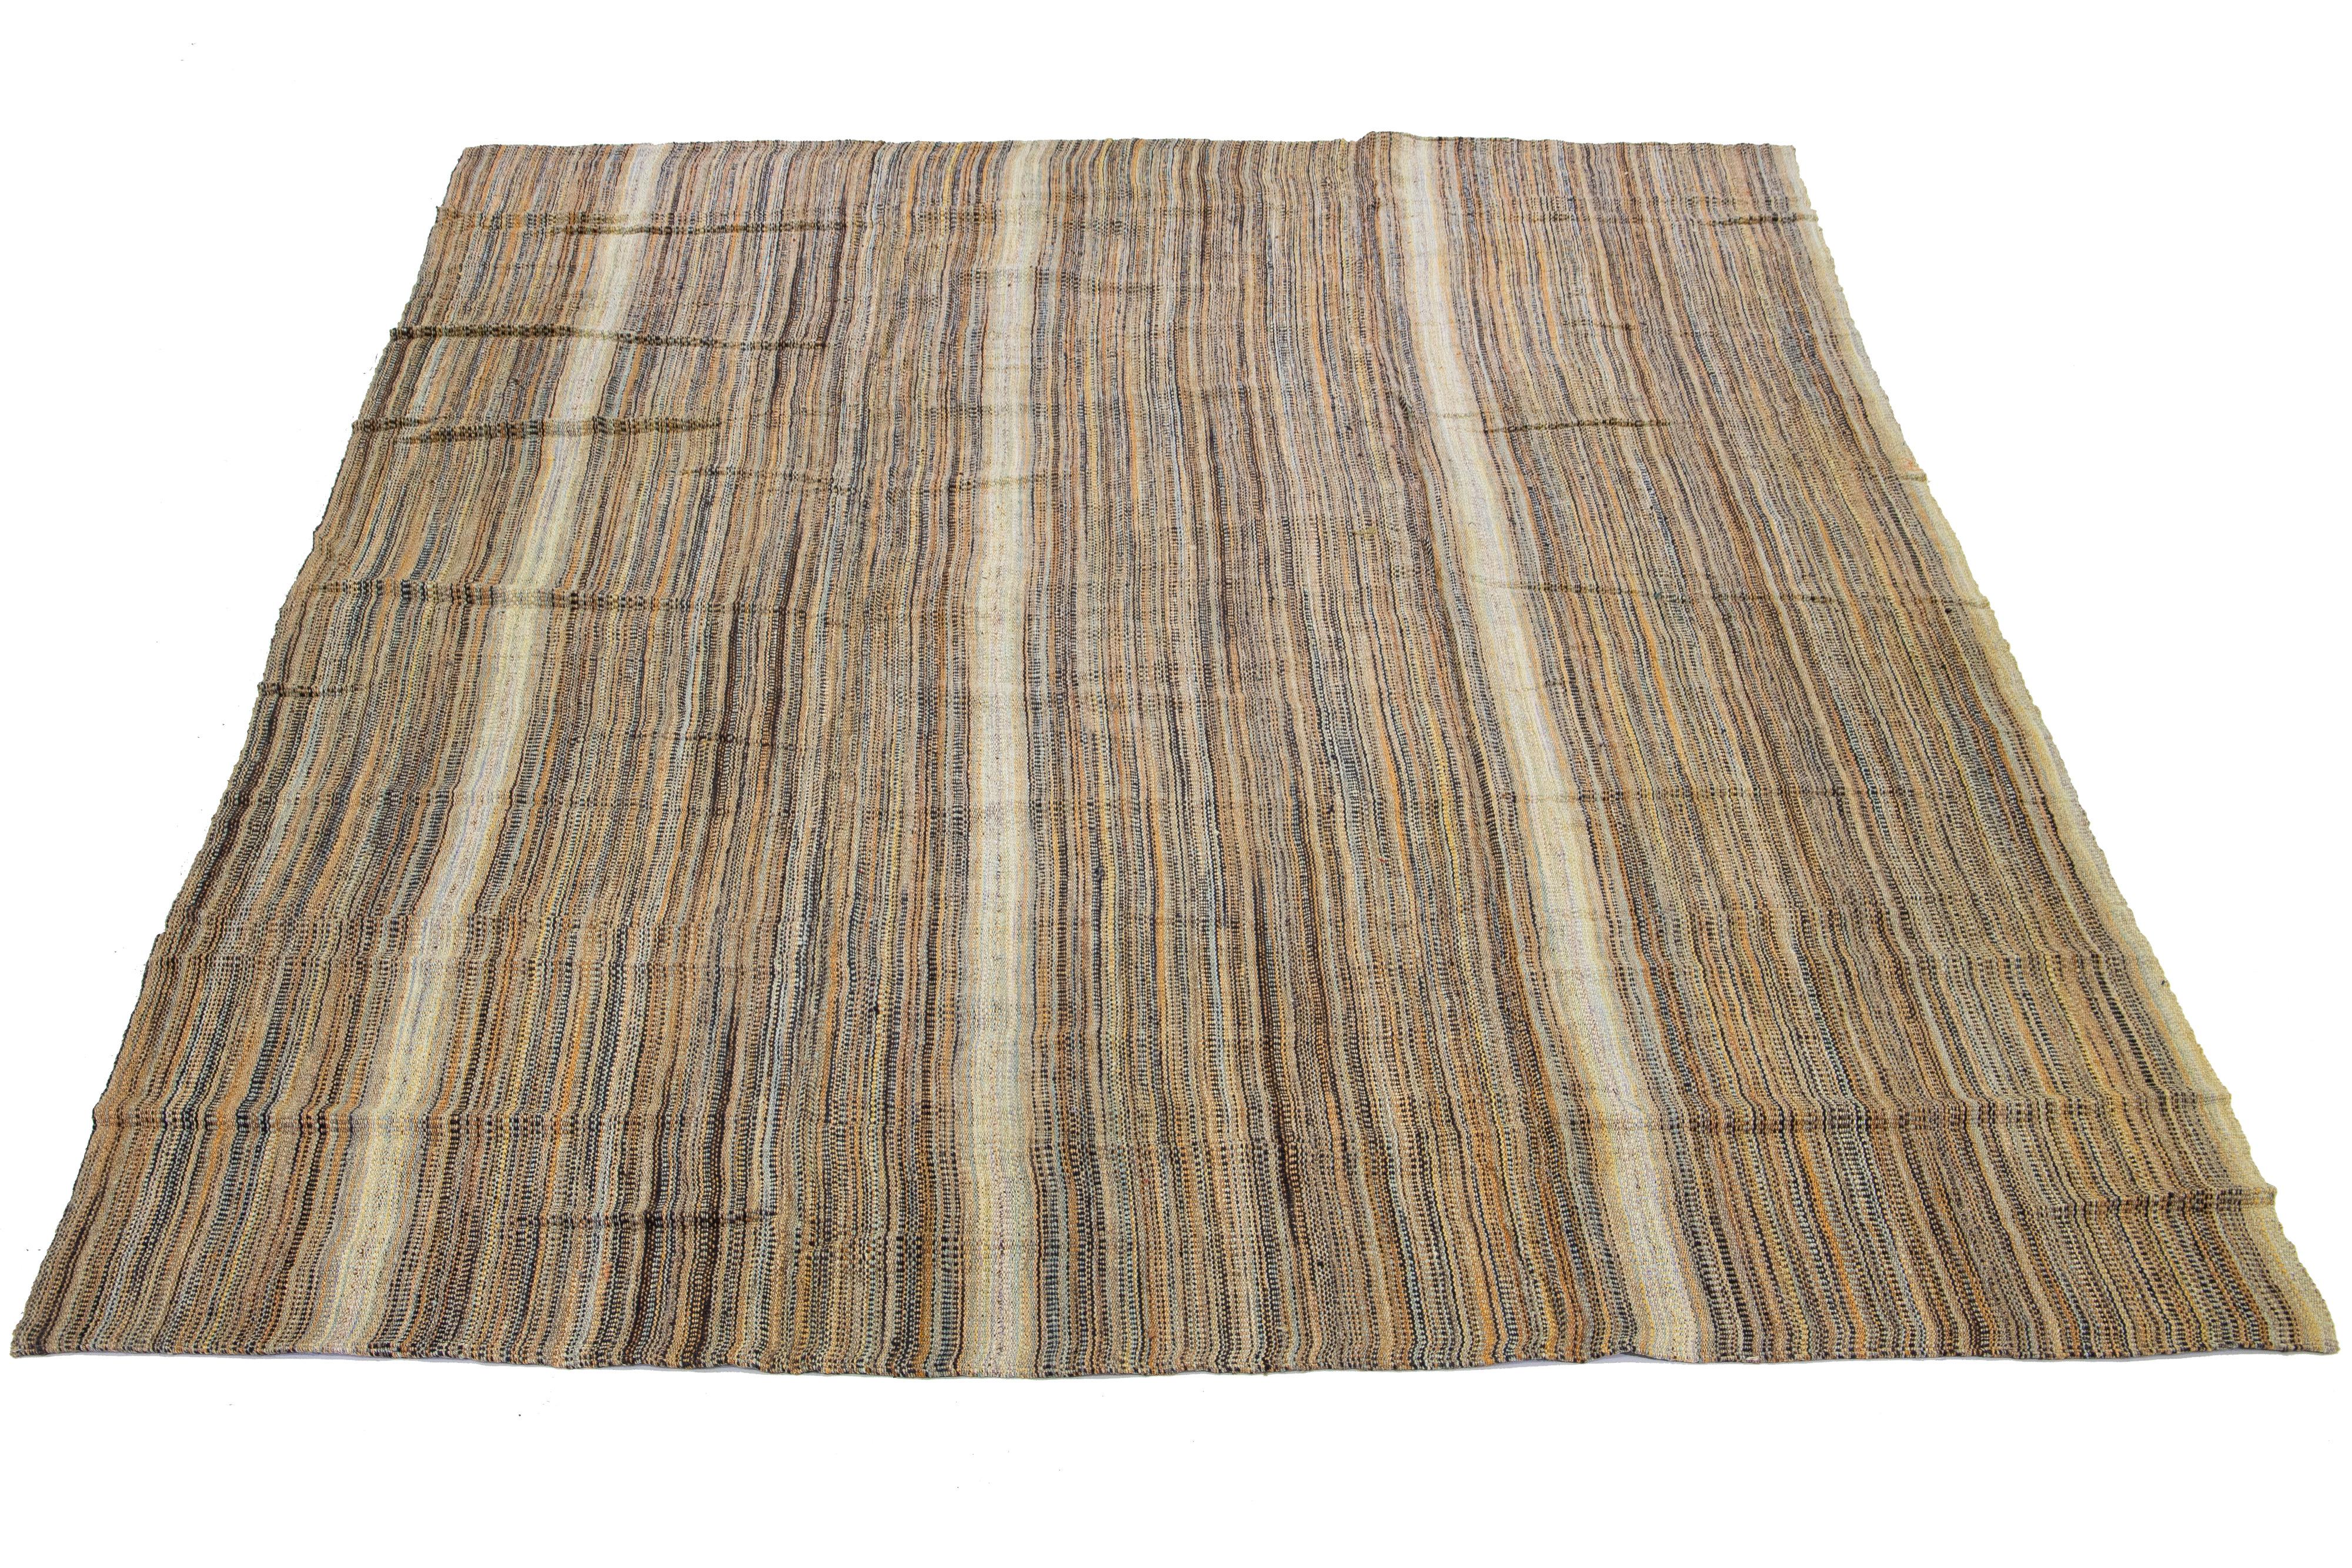 Dieser indische Teppich zeigt ein modernes Flachgewebe im Kilim-Stil, das aus Wolle gefertigt ist. Der Teppich weist ein elegantes Streifenmuster in Beige-, Hellbraun- und Brauntönen auf.

Dieser Teppich misst 11'8